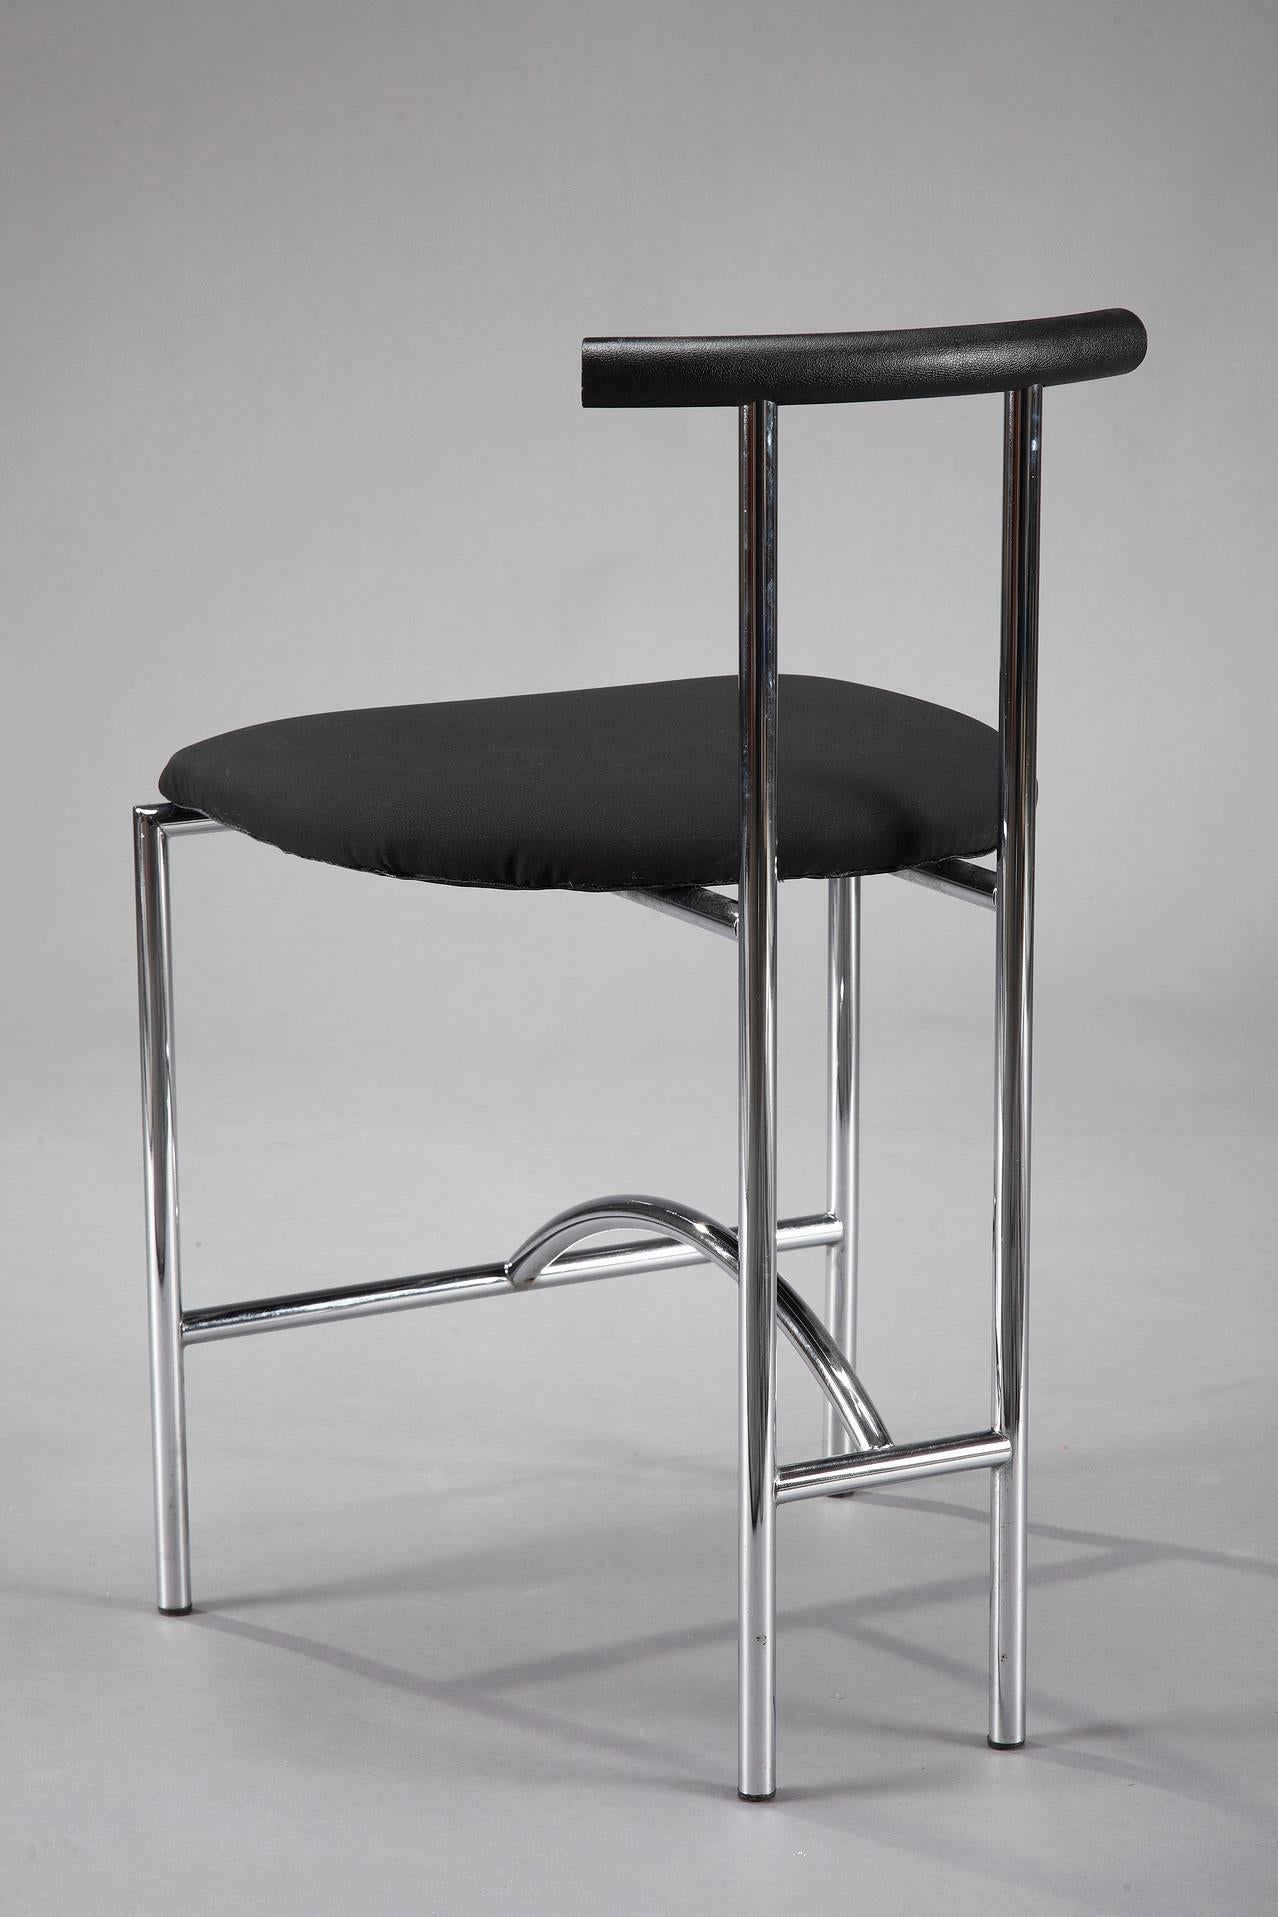 3 Bieffeplast Tokyo Chairs by Rodney Kinsman 5